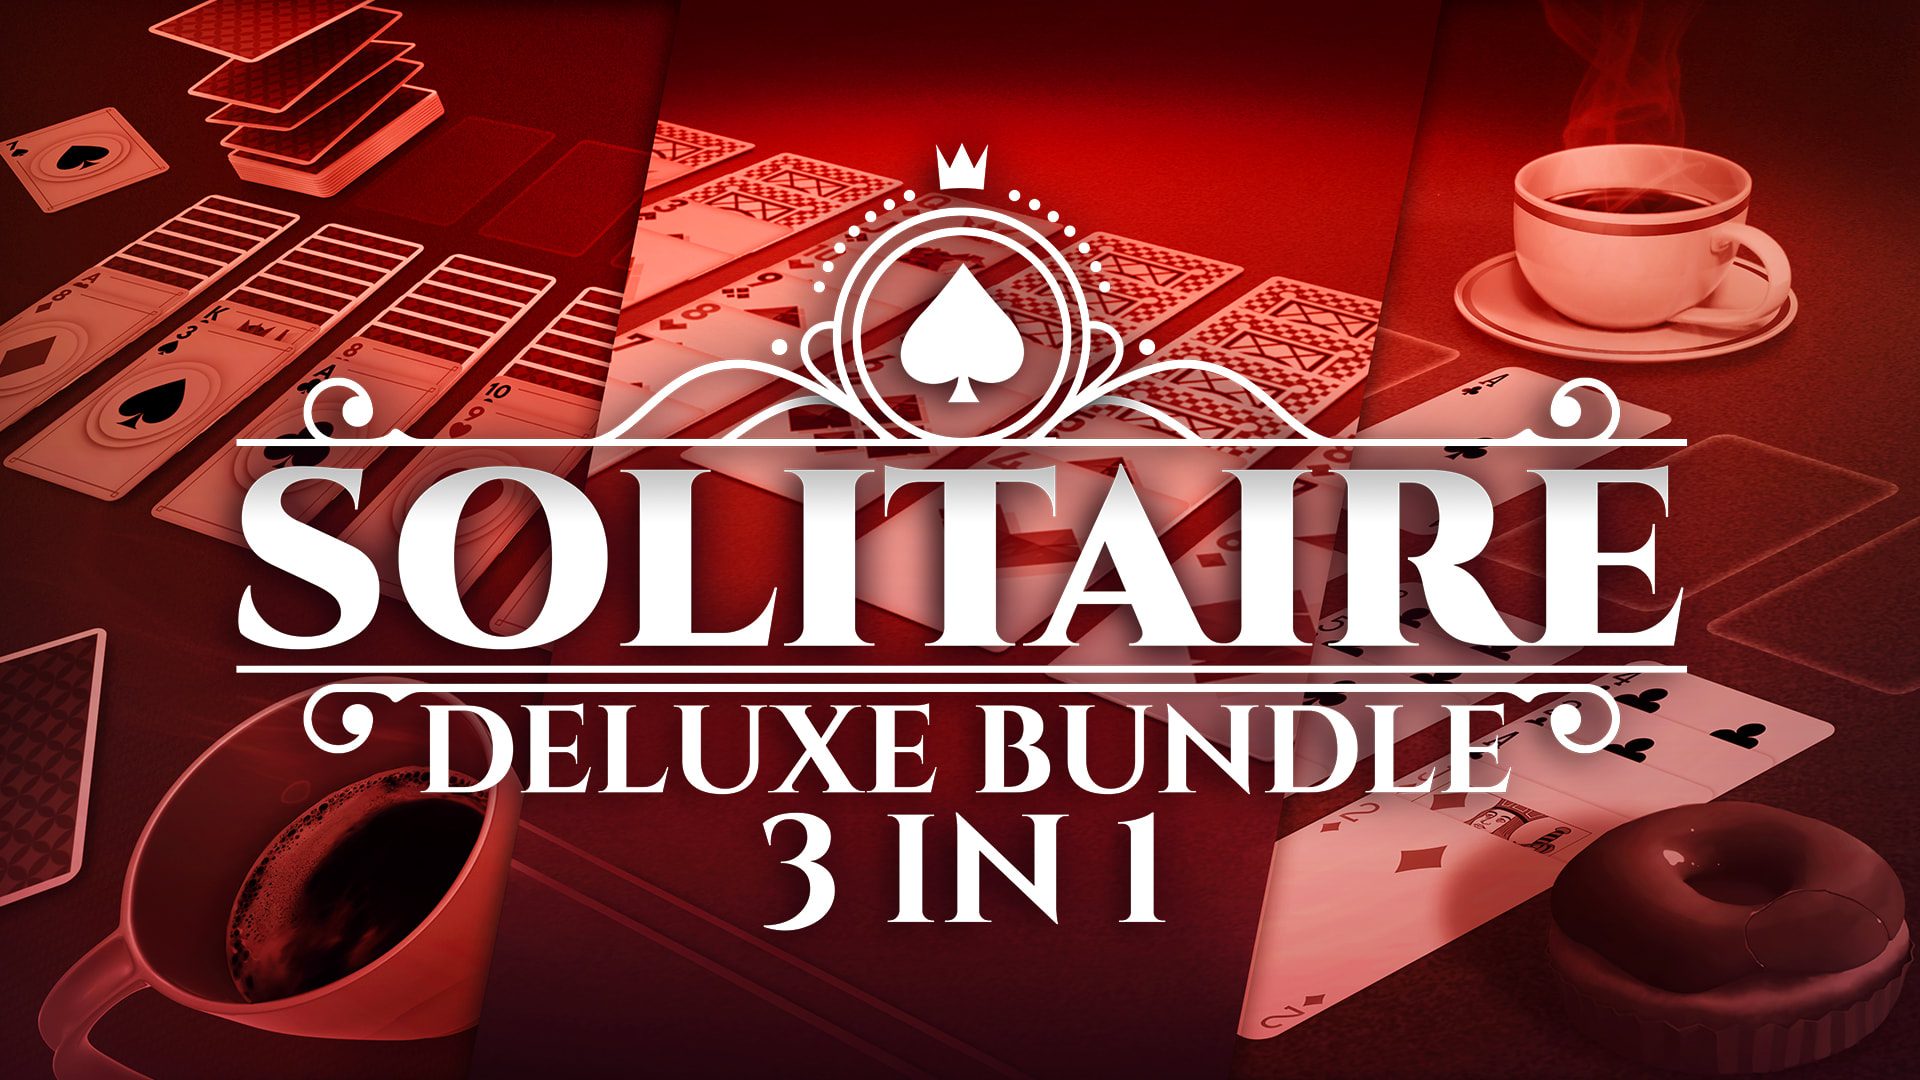 Solitaire Deluxe Bundle - 3 in 1